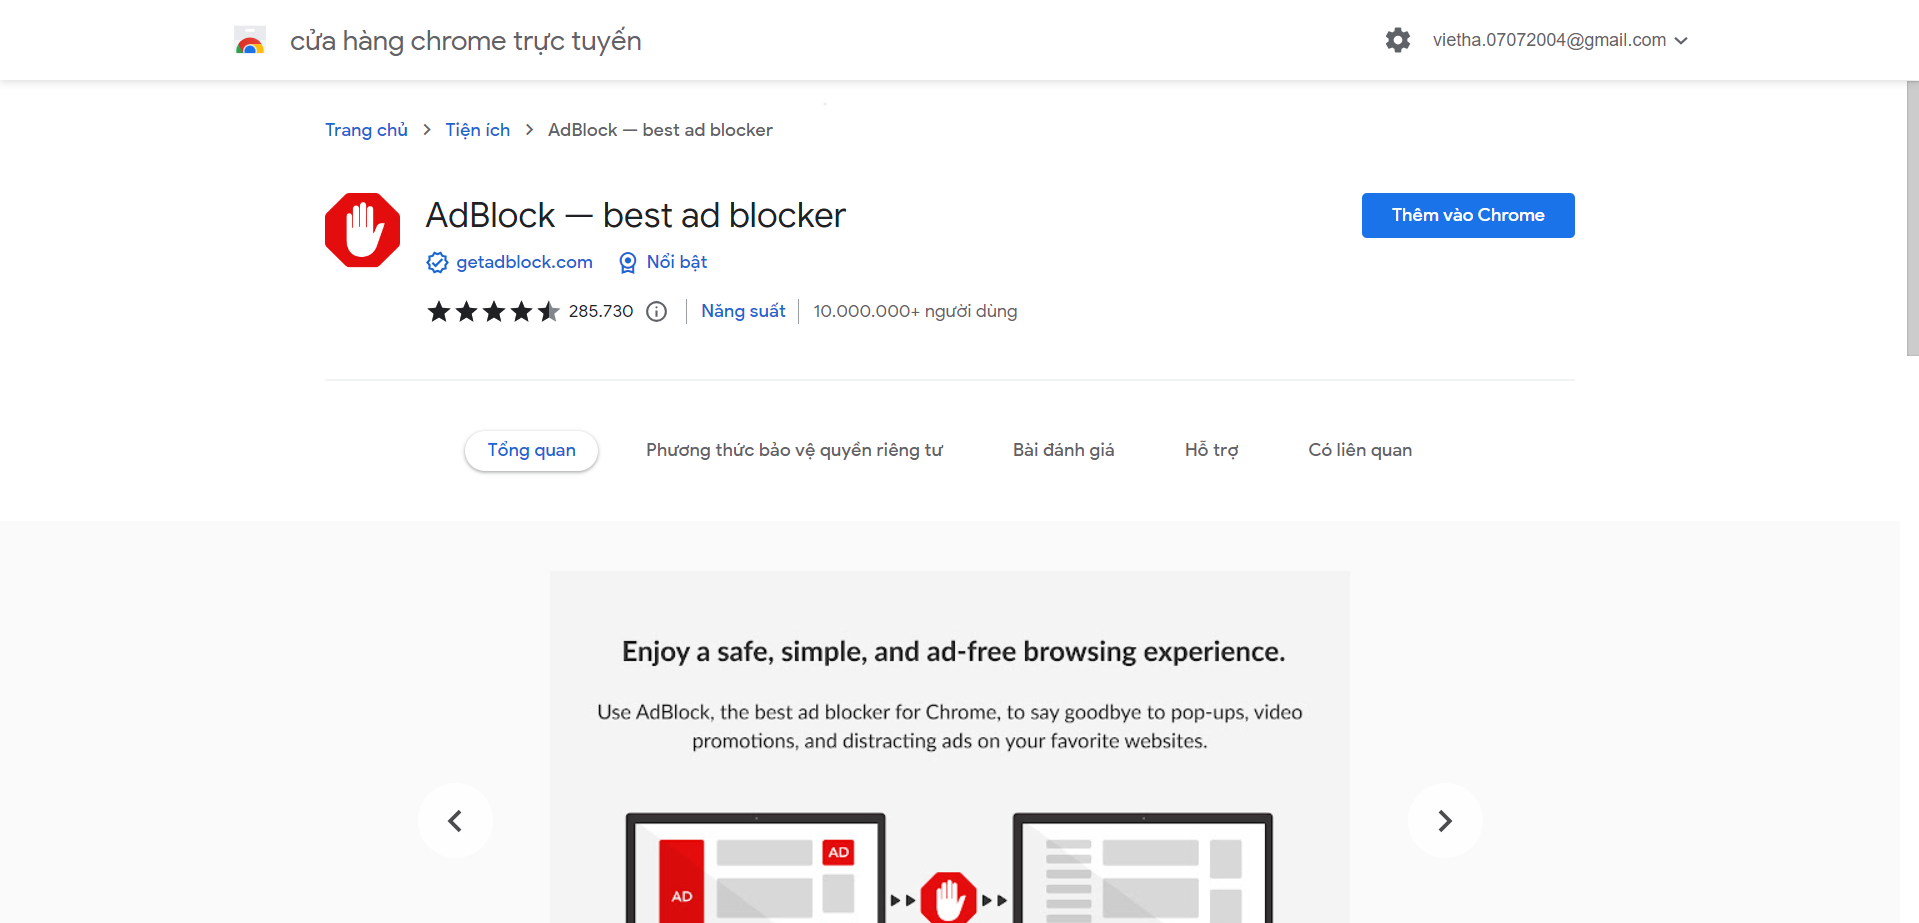 Sử dụng phần mềm chặn quảng cáo trên Facebook Google Chrome bằng Adblock